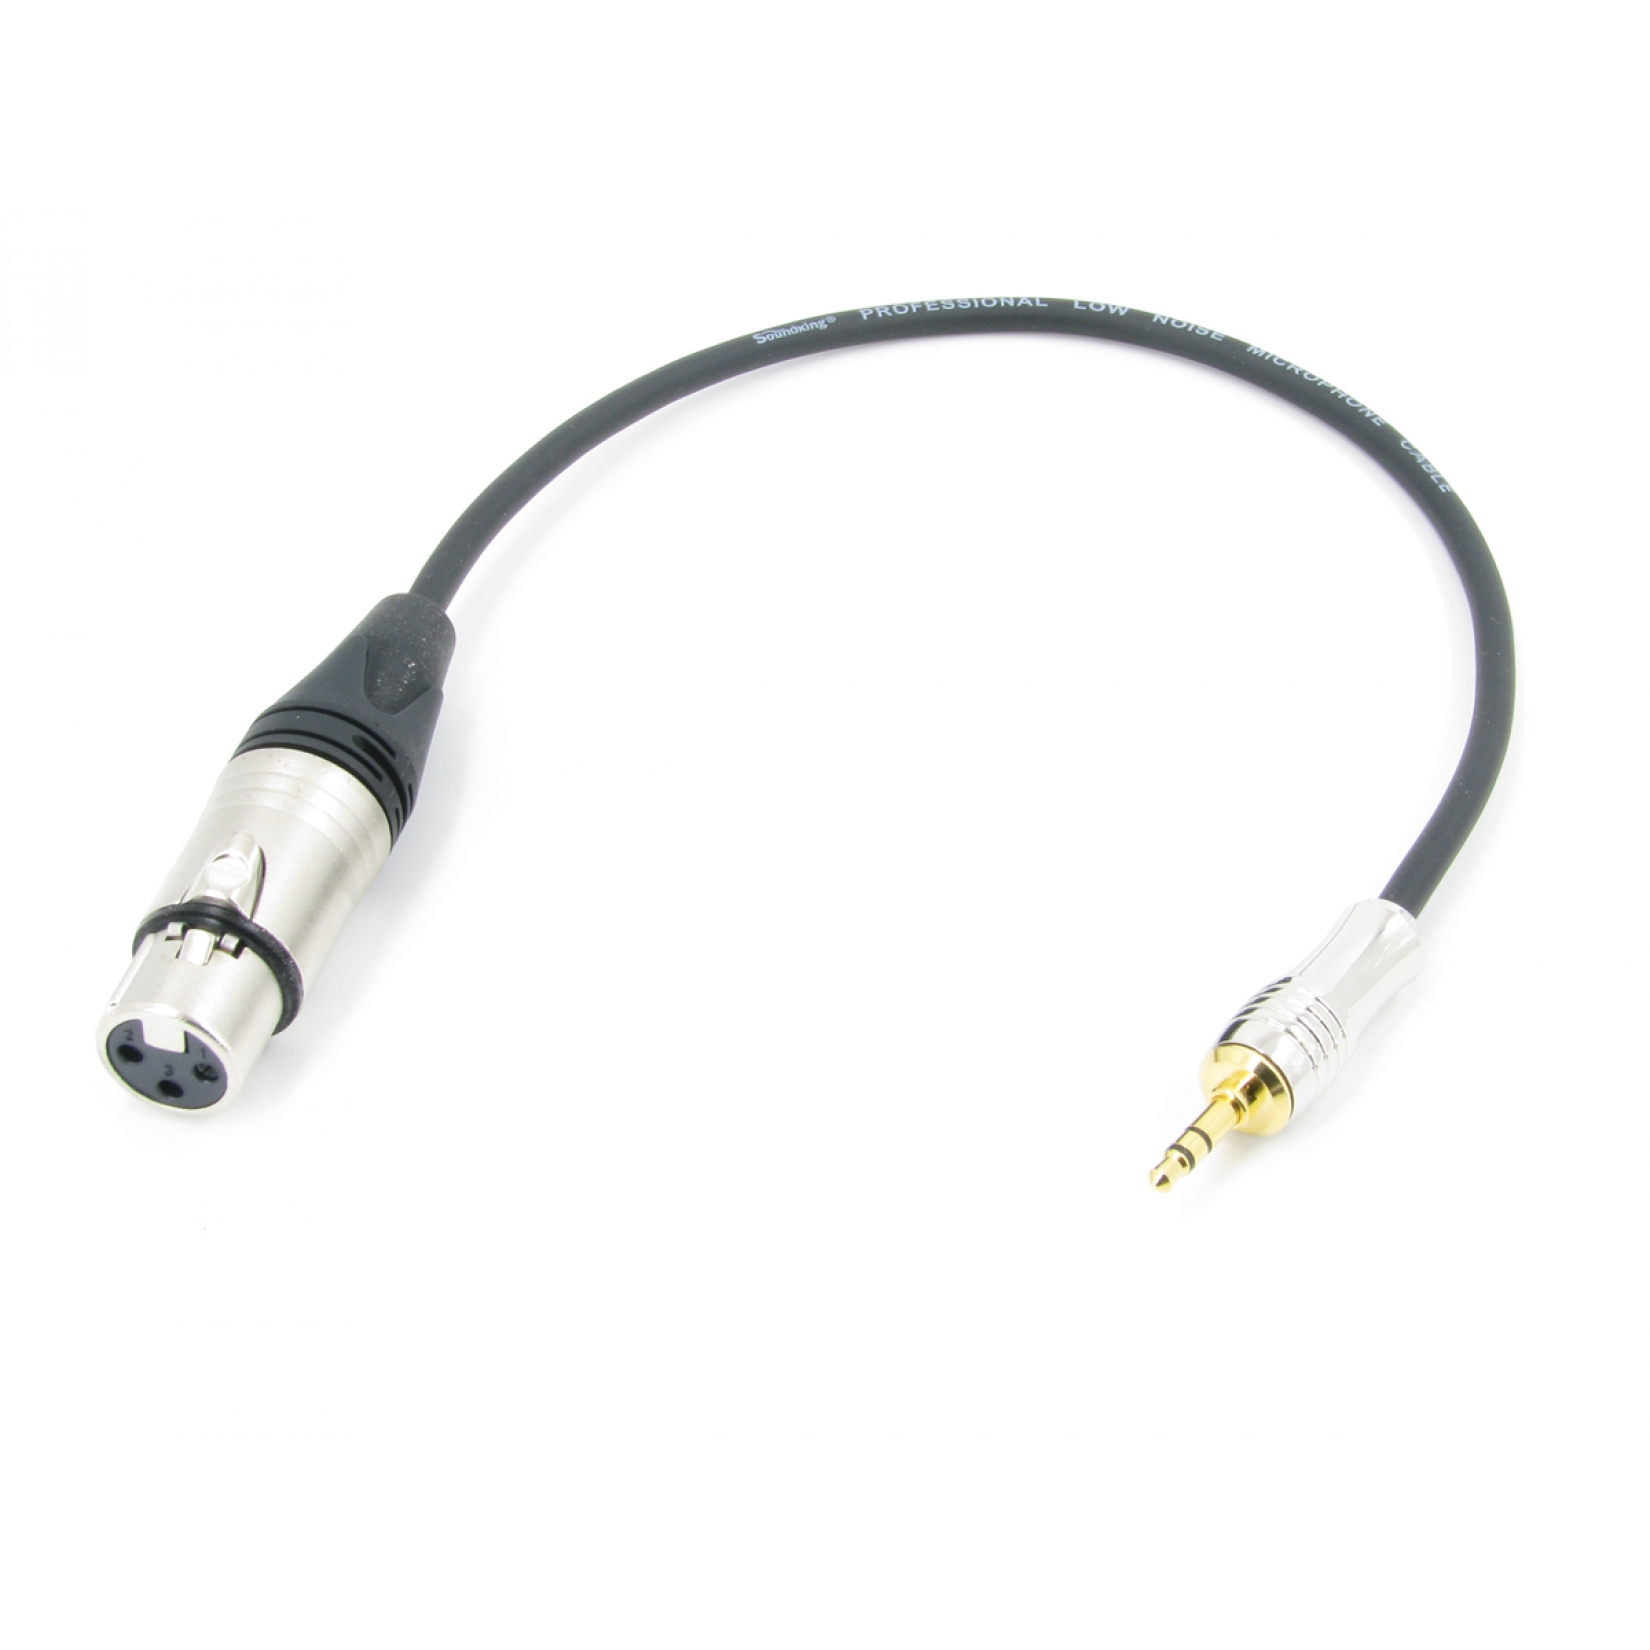 Аудио кабель mini JACK 3.5 - XLR (F) межблочный, симметричный, балансный, длина 0,5 метра